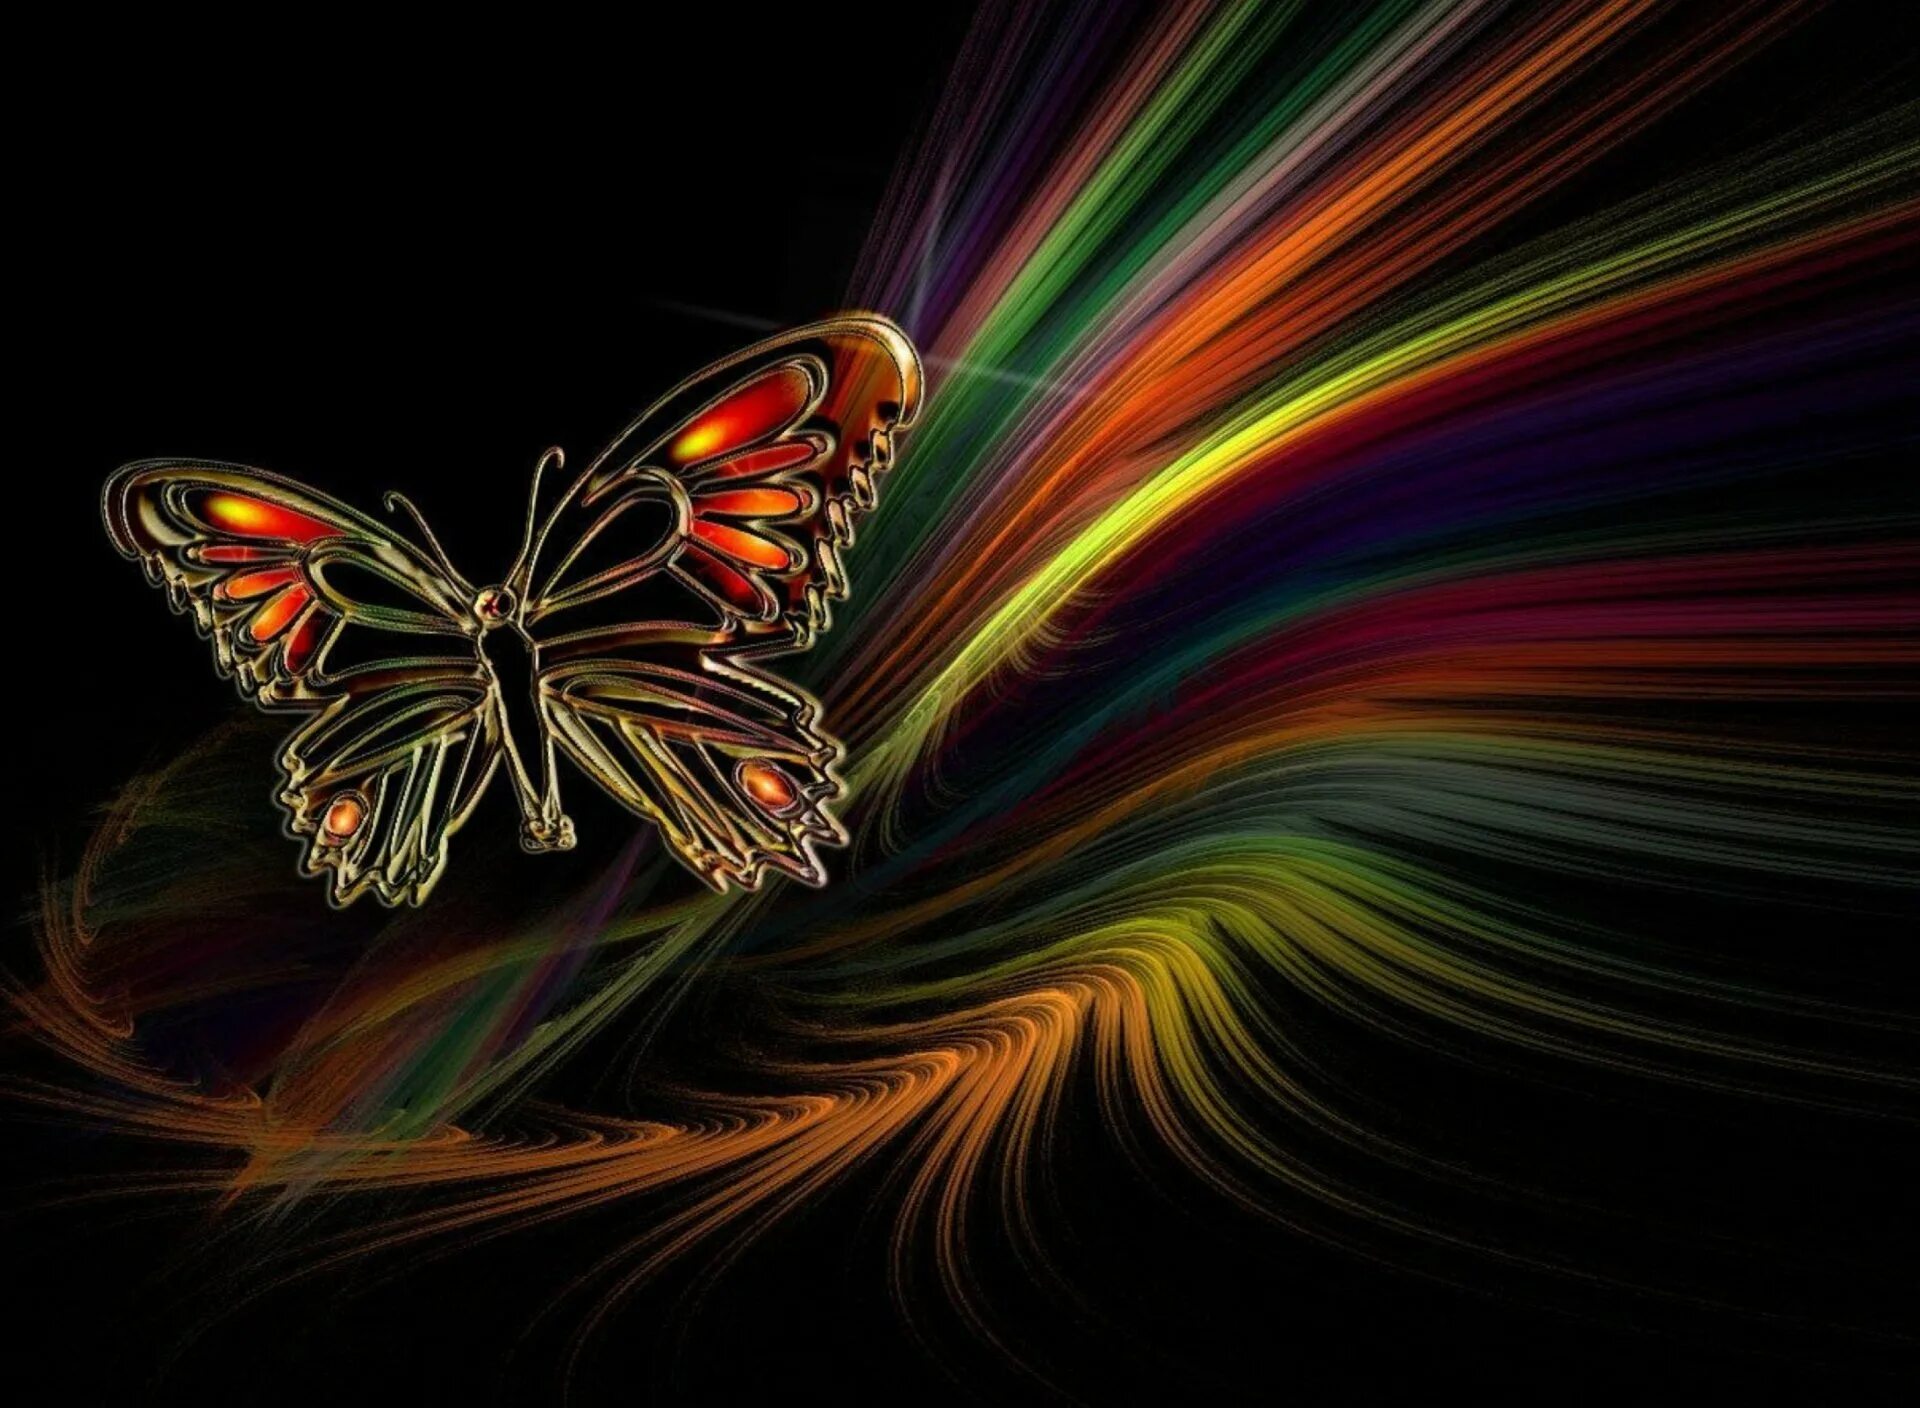 Заставки на телефон 1. Красивый фон на телефон. Бабочка абстракция. Заставка бабочки. Яркие обои.